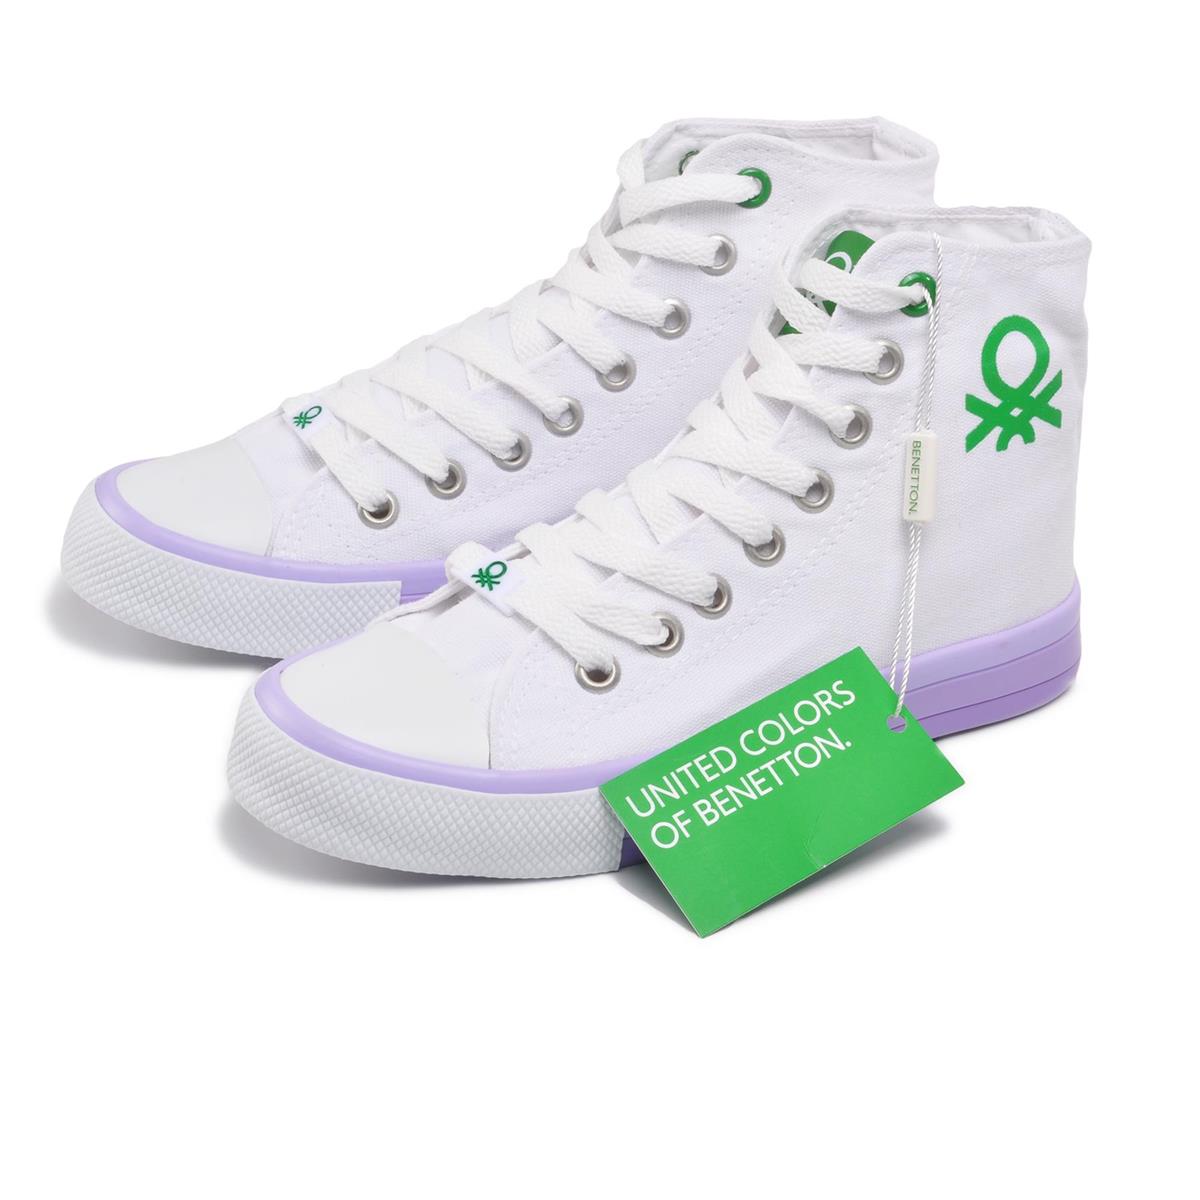 Benetton Bn-30189 Beyaz-Lila Kadın Spor Ayakkabı - Ayakmod